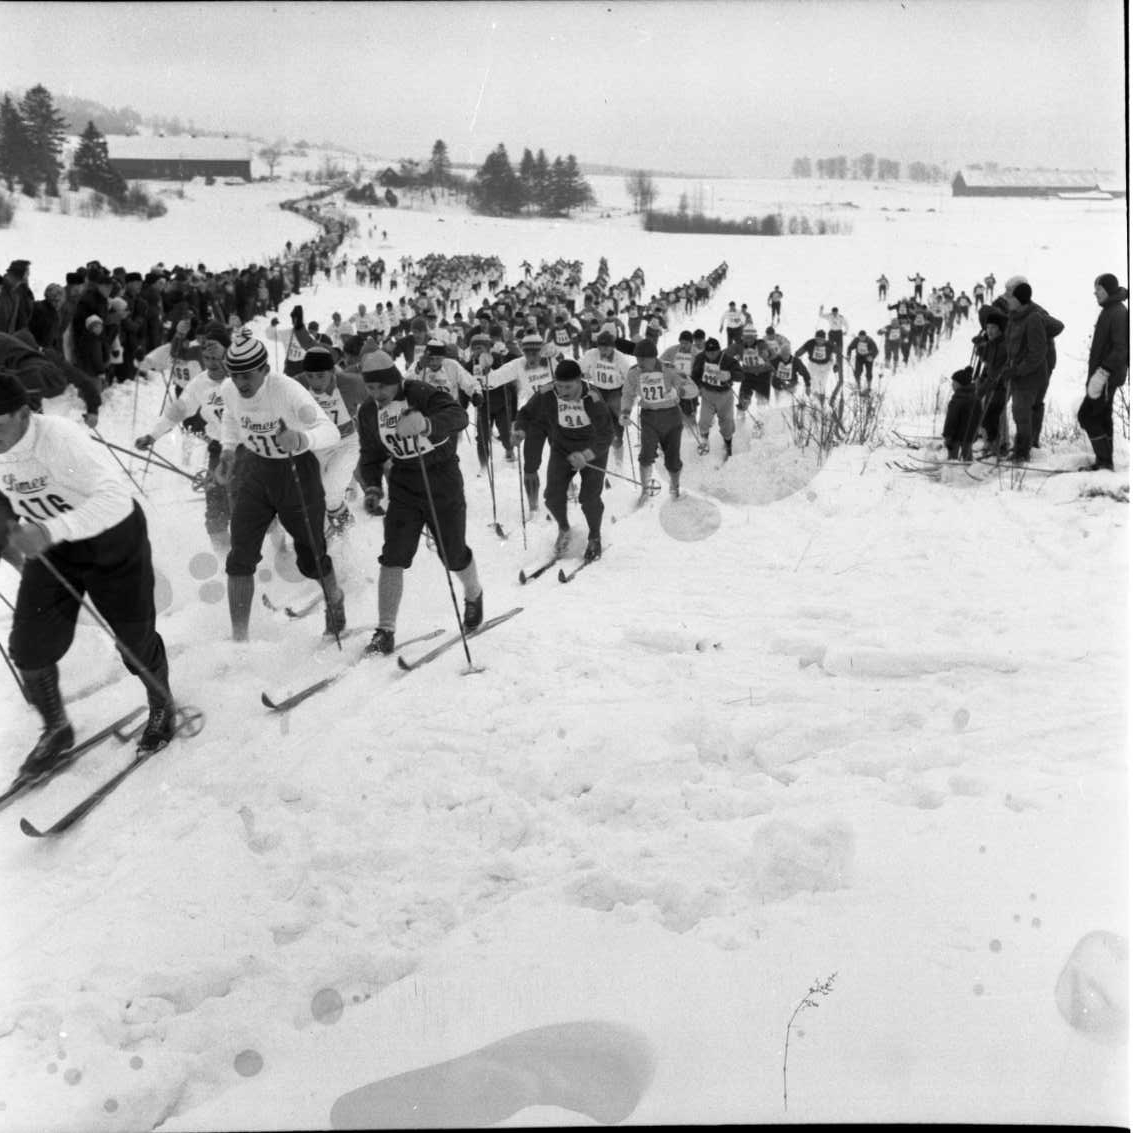 Ett vinterlandskap med ett stort gärde. Det är strax efter starten av skidtävlingen Braheloppet. Skidåkare passerar fotografen och utmed spåren står publiken.
Skidlöpararna på väg mot Grännaberget. Fotot är taget mot söder. I bakgrunden Ravelsmark Prästgård.